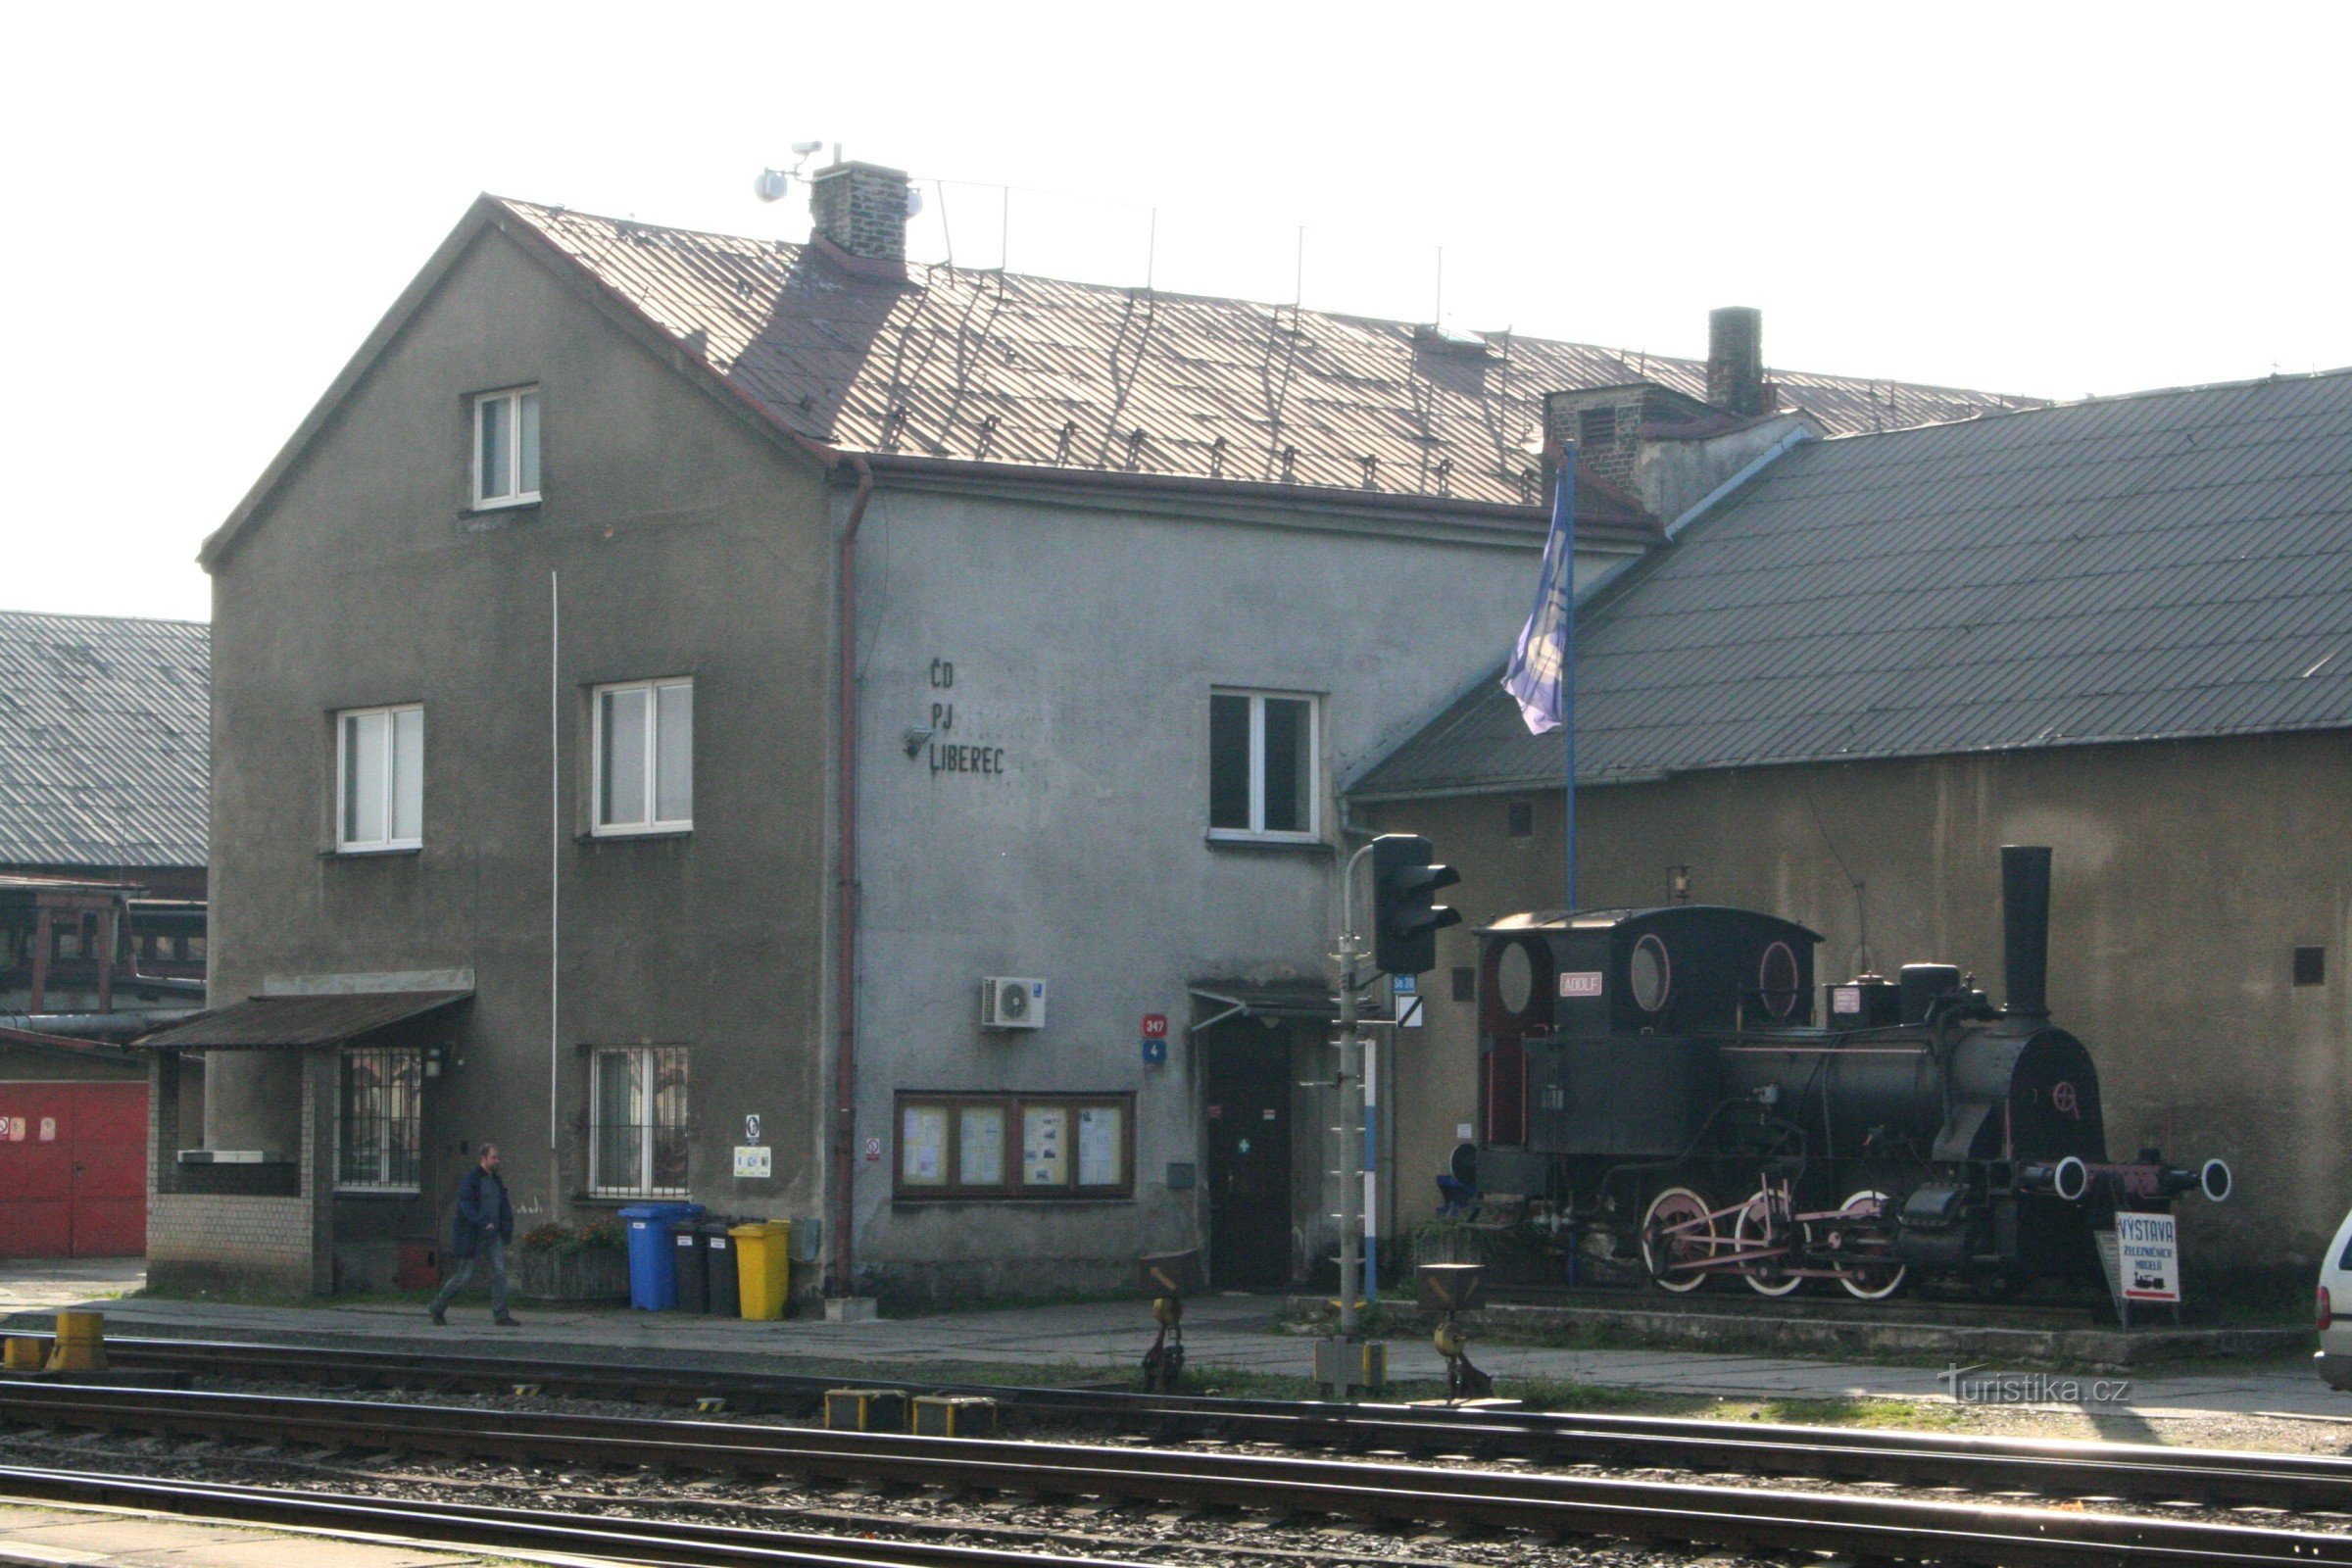 Monumentul feroviar - locomotiva cu abur Adolf